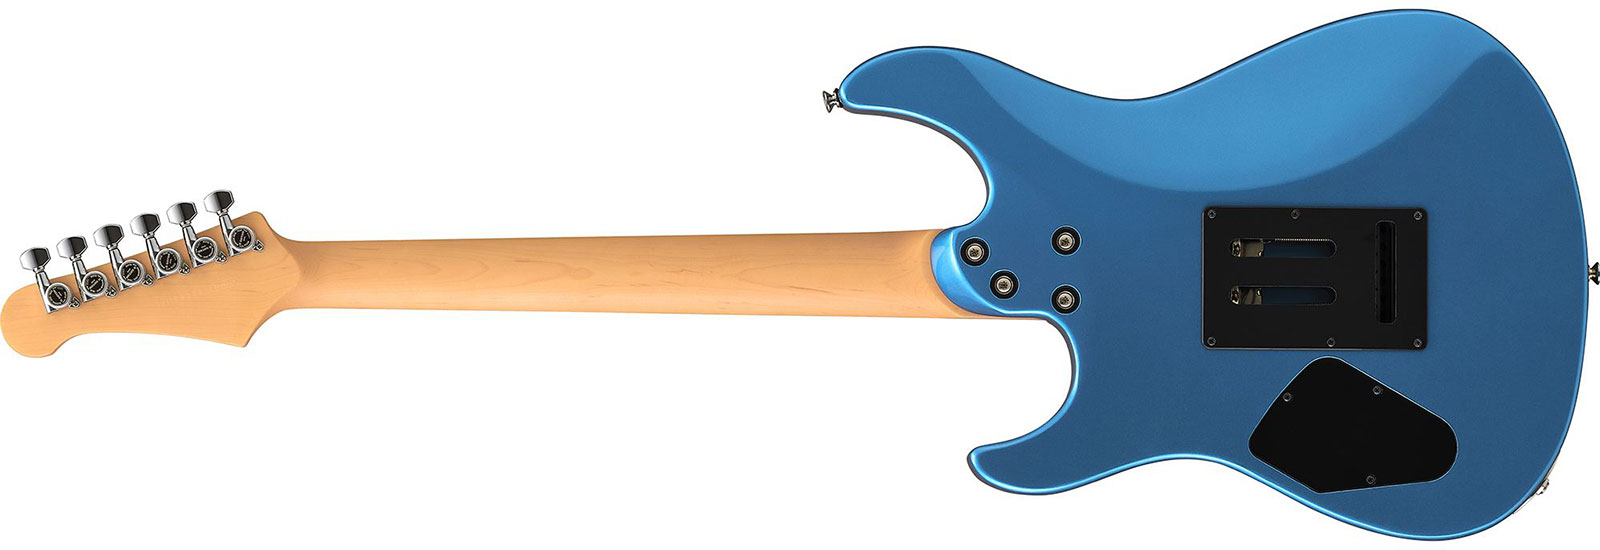 Yamaha Pacifica Standard Plus Pacs+12 Trem Hss Rw - Sparkle Blue - Str shape electric guitar - Variation 1